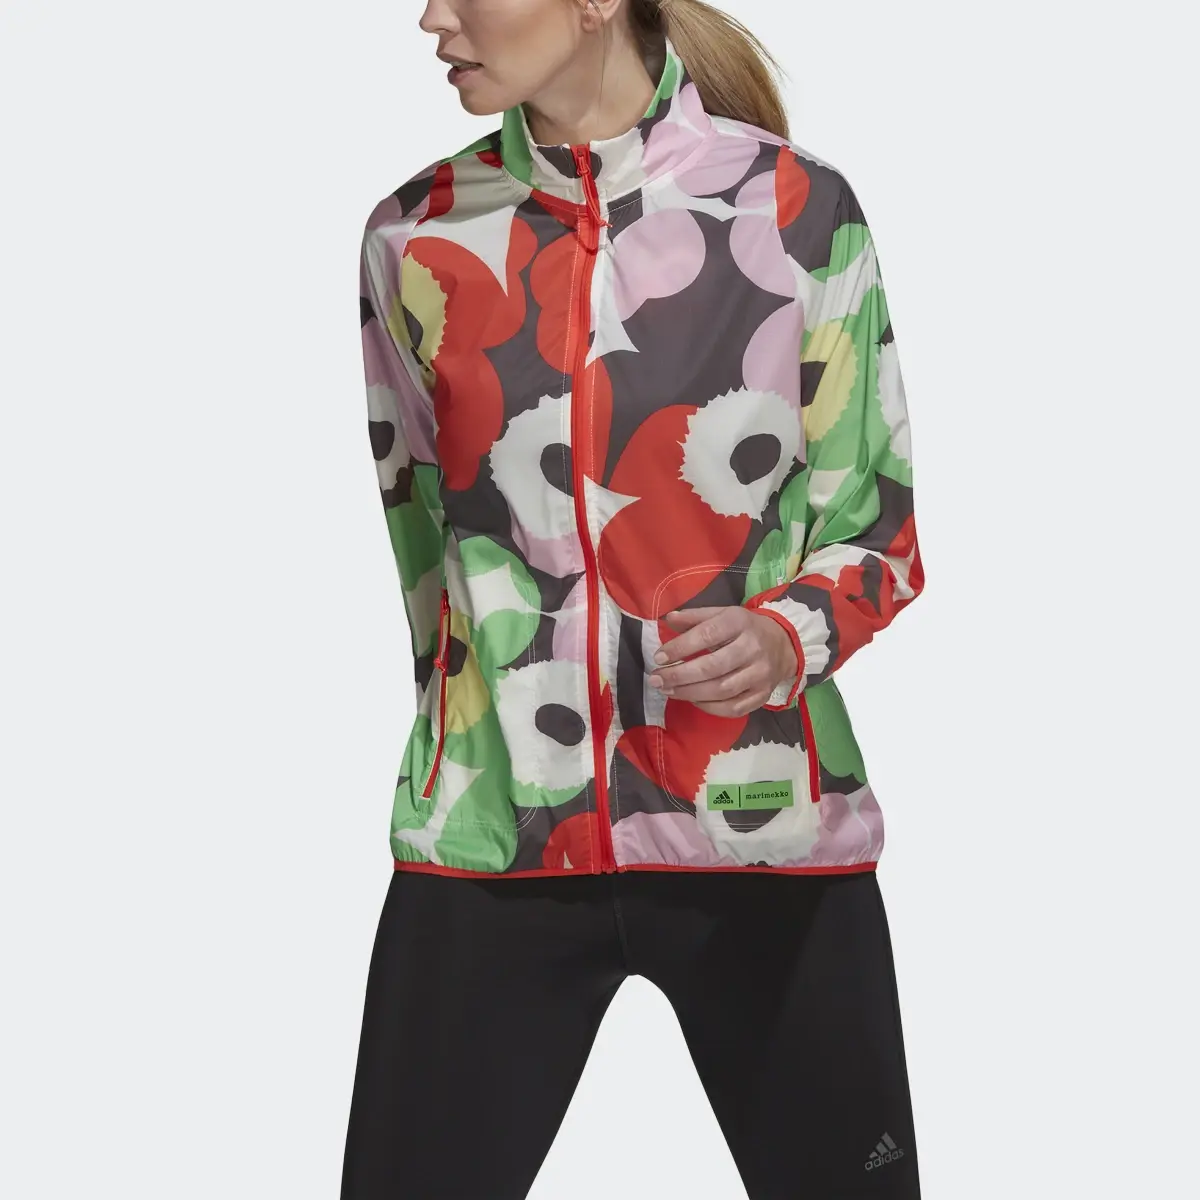 Adidas Marimekko x adidas Running Jacket. 1